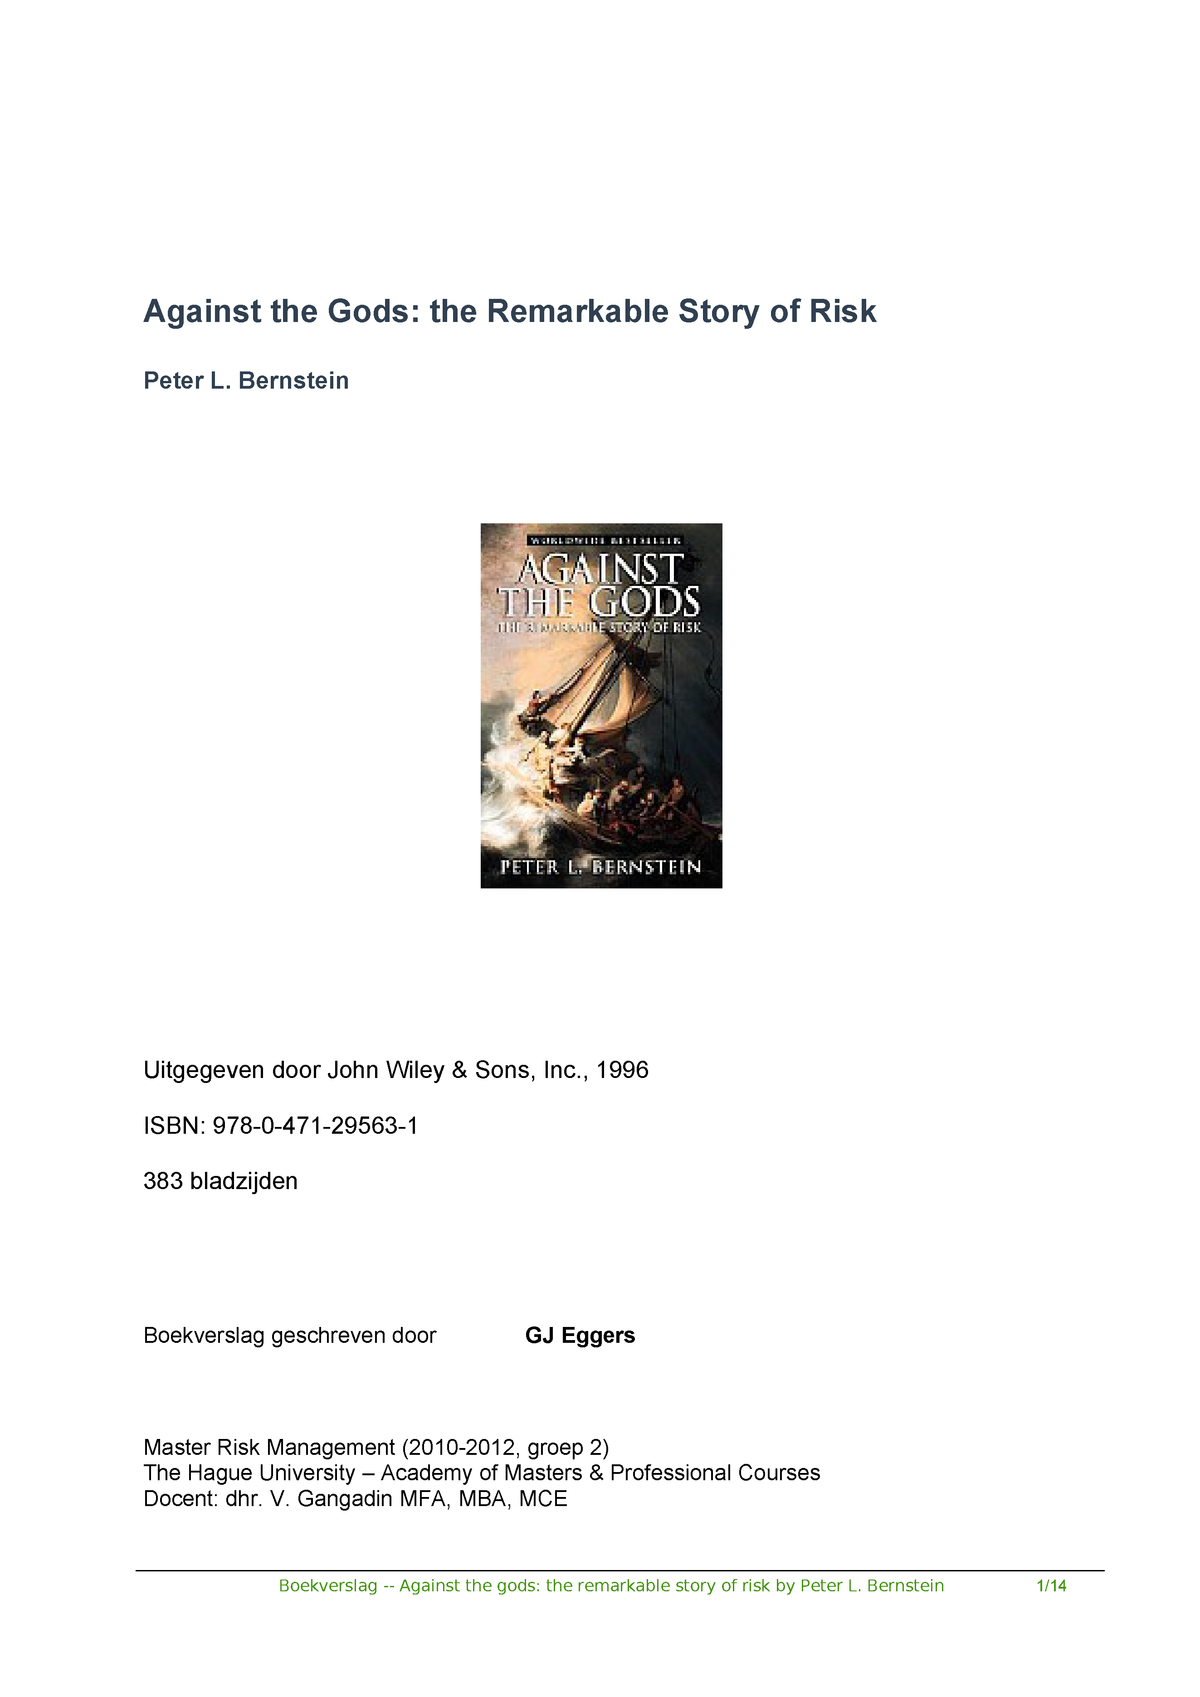 Ongekend Boekverslag Against the Gods, The remarkable story of risk CX-07